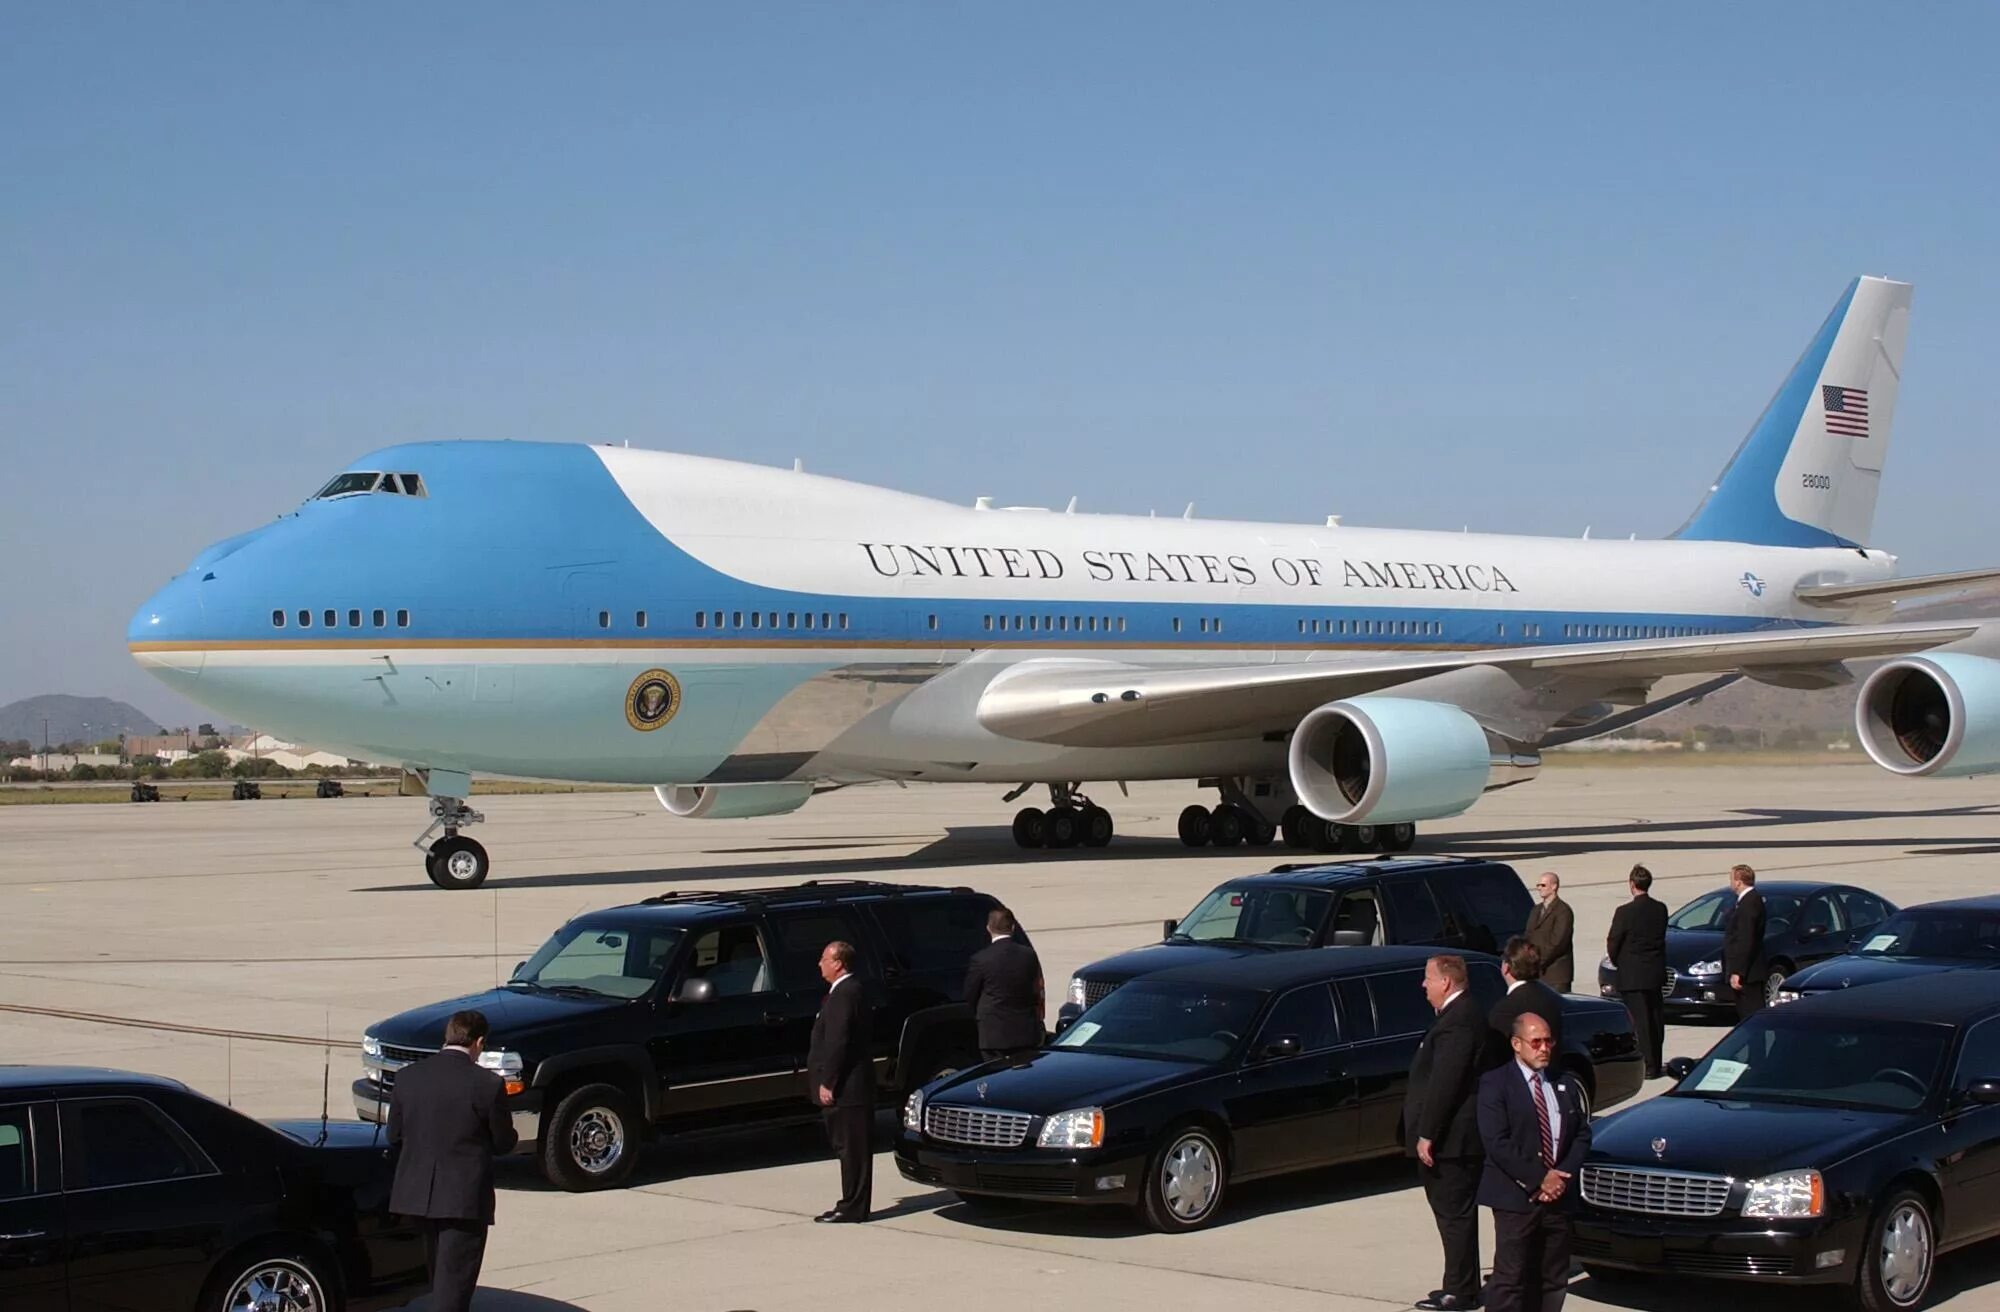 Боинг 747 президента США. Борт 1 президента США. Самолет Боинг 747 президента США. Борт номер 1 президента США Air Force one.